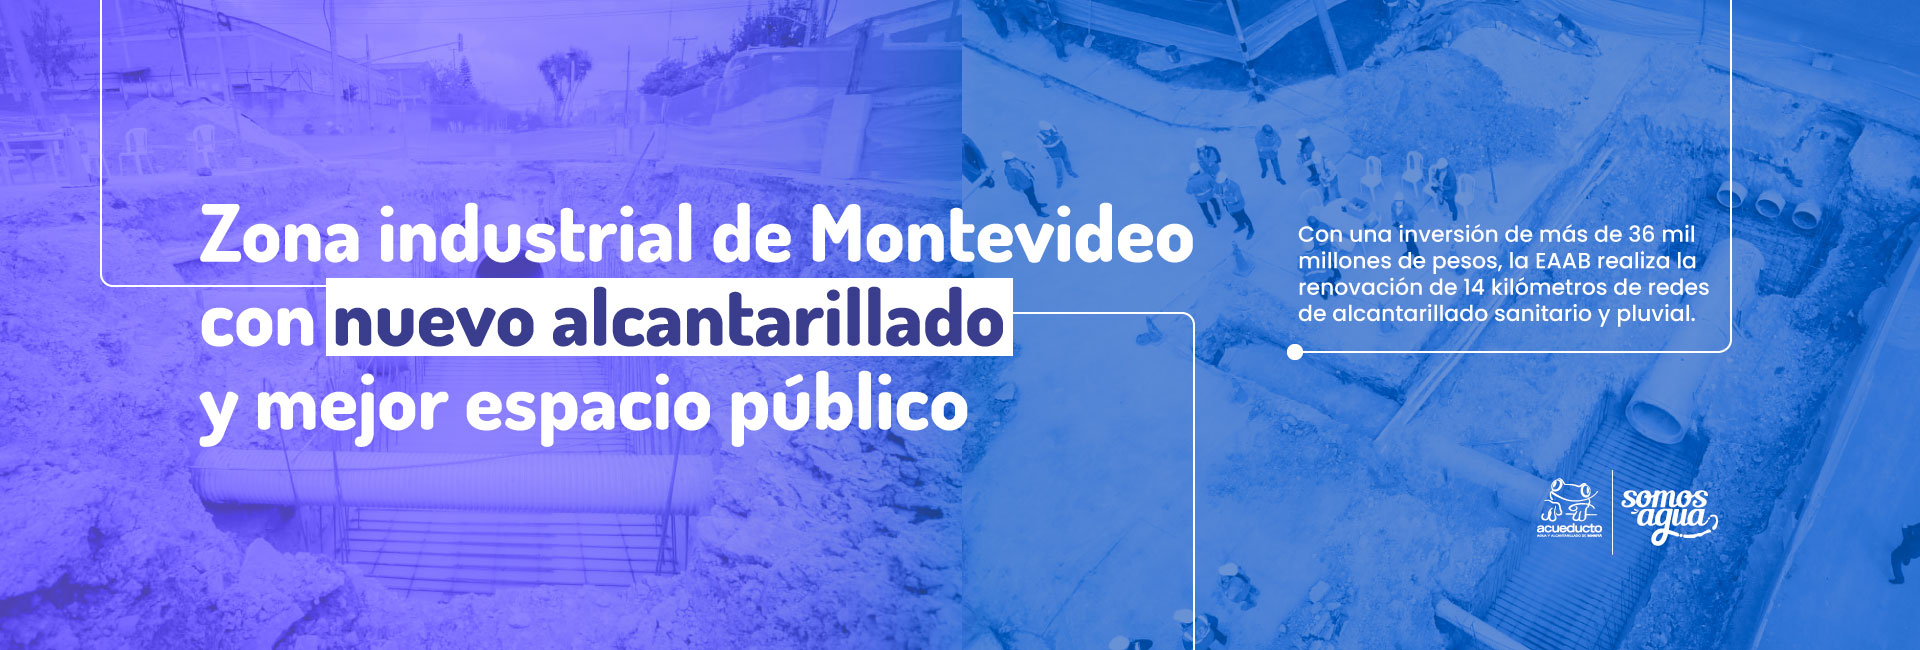 Zona industrial de Montevideo con nuevo alcantarillado y mejor espacio público